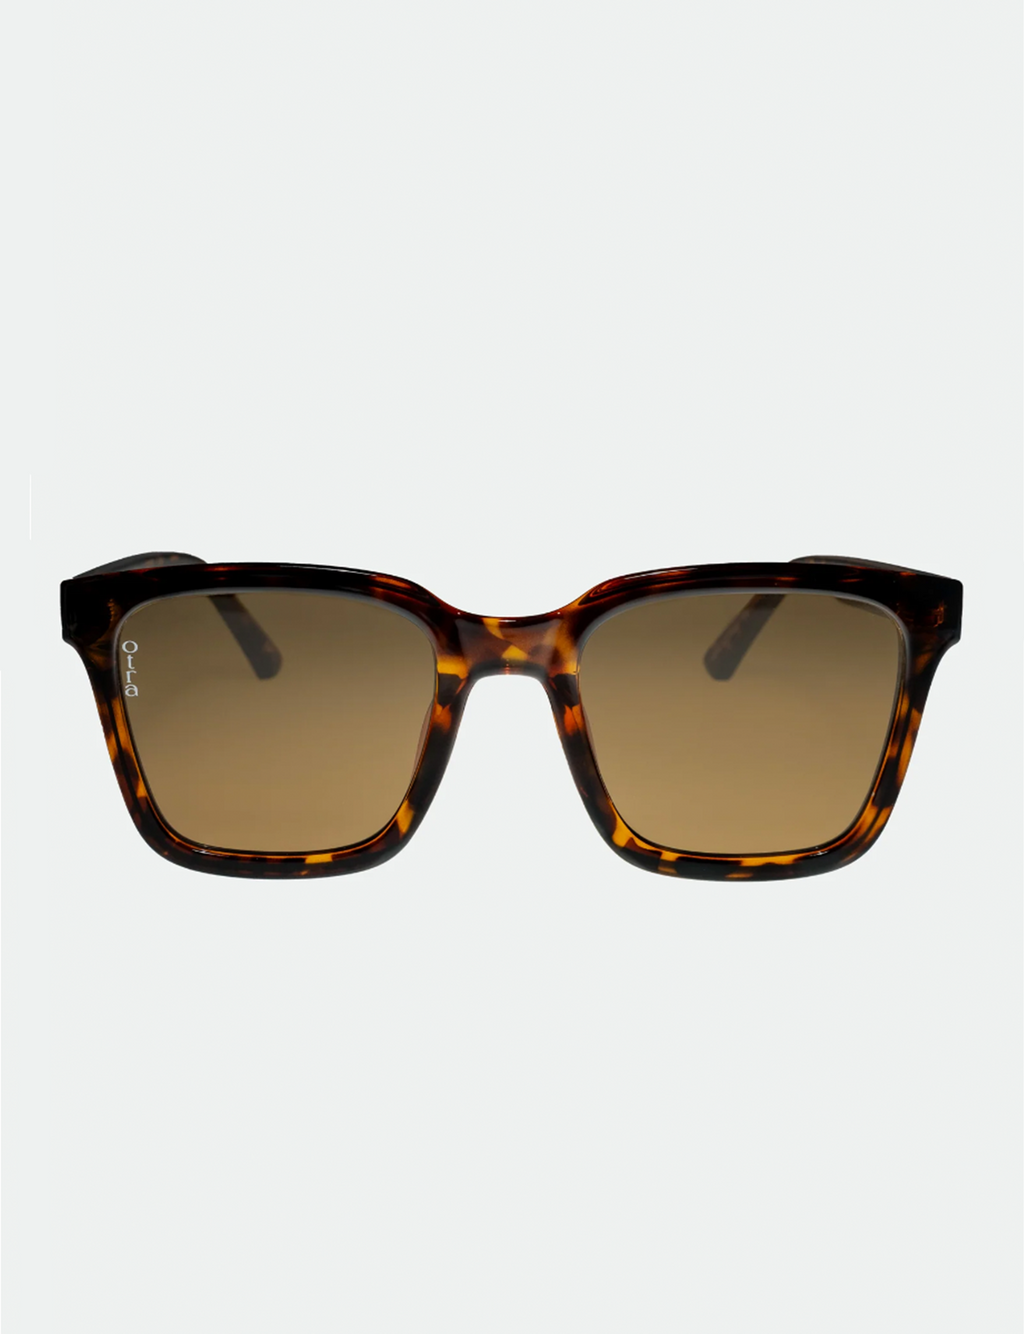 Fyn Sunglasses, Tort/Brown